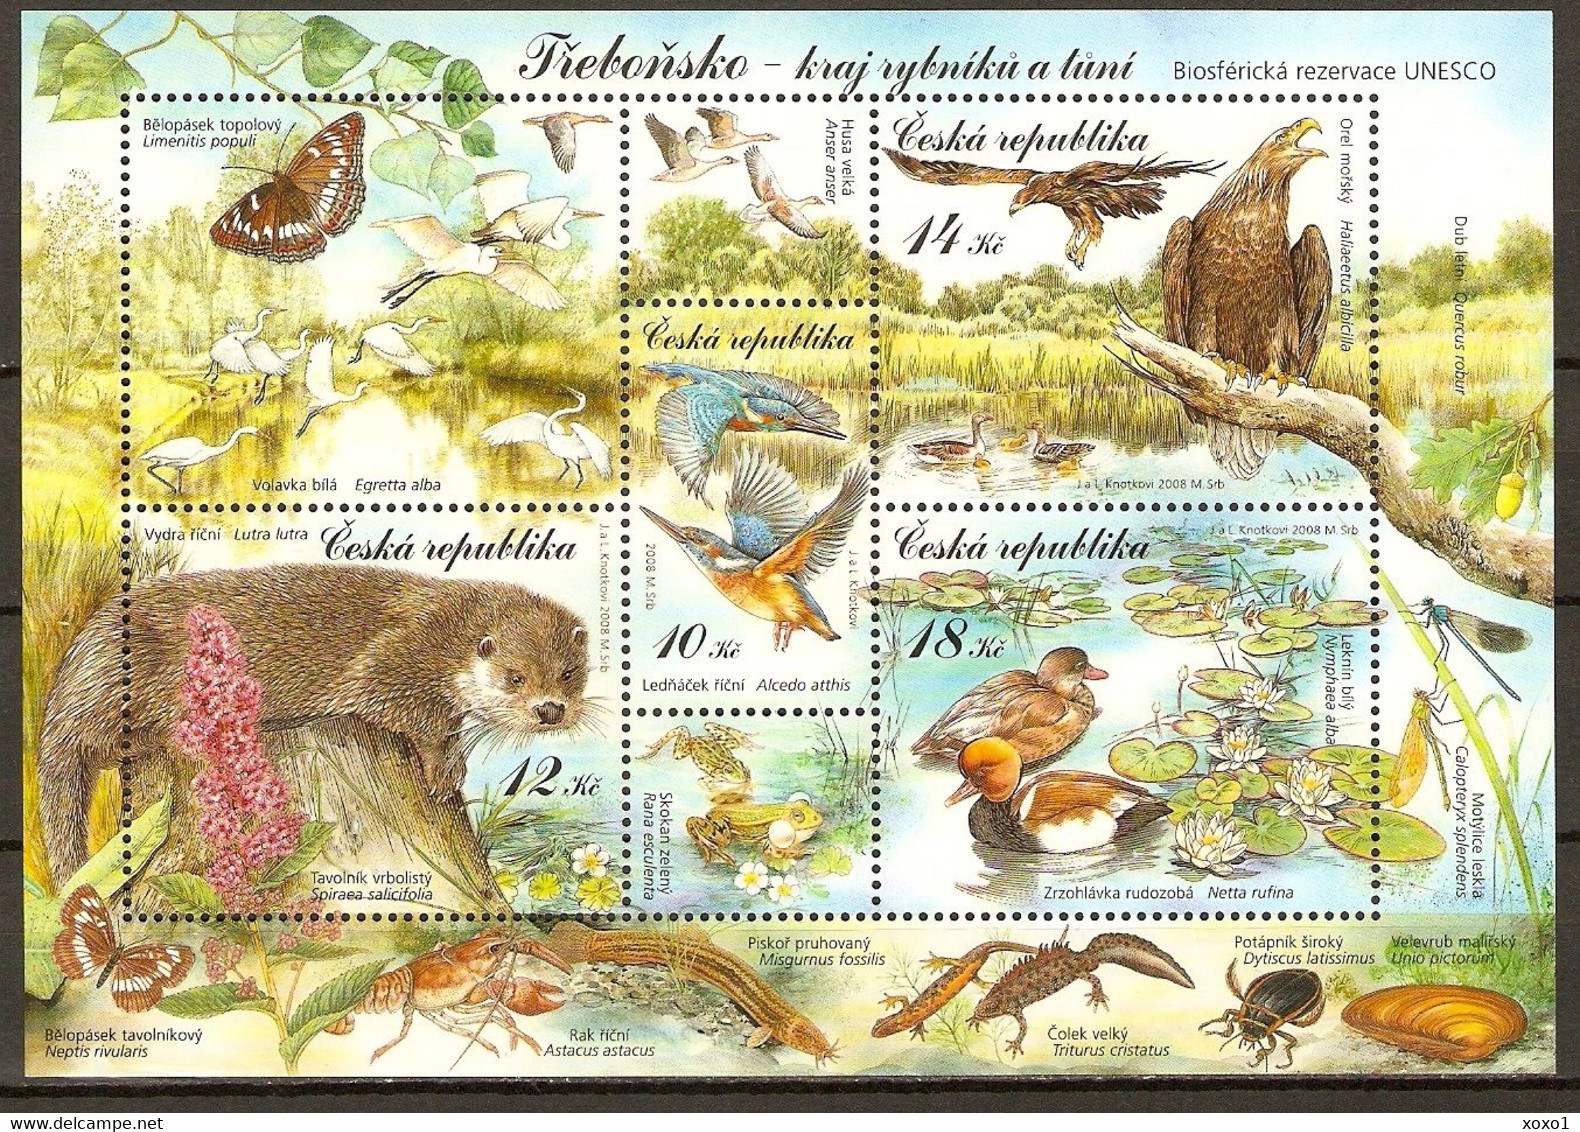 Czech Republic 2008 MiNr. (Block 30) Tschechische Republik UNESCO Birds Mammals Insects Frogs S\sh   MNH** 5.00 € - UNESCO